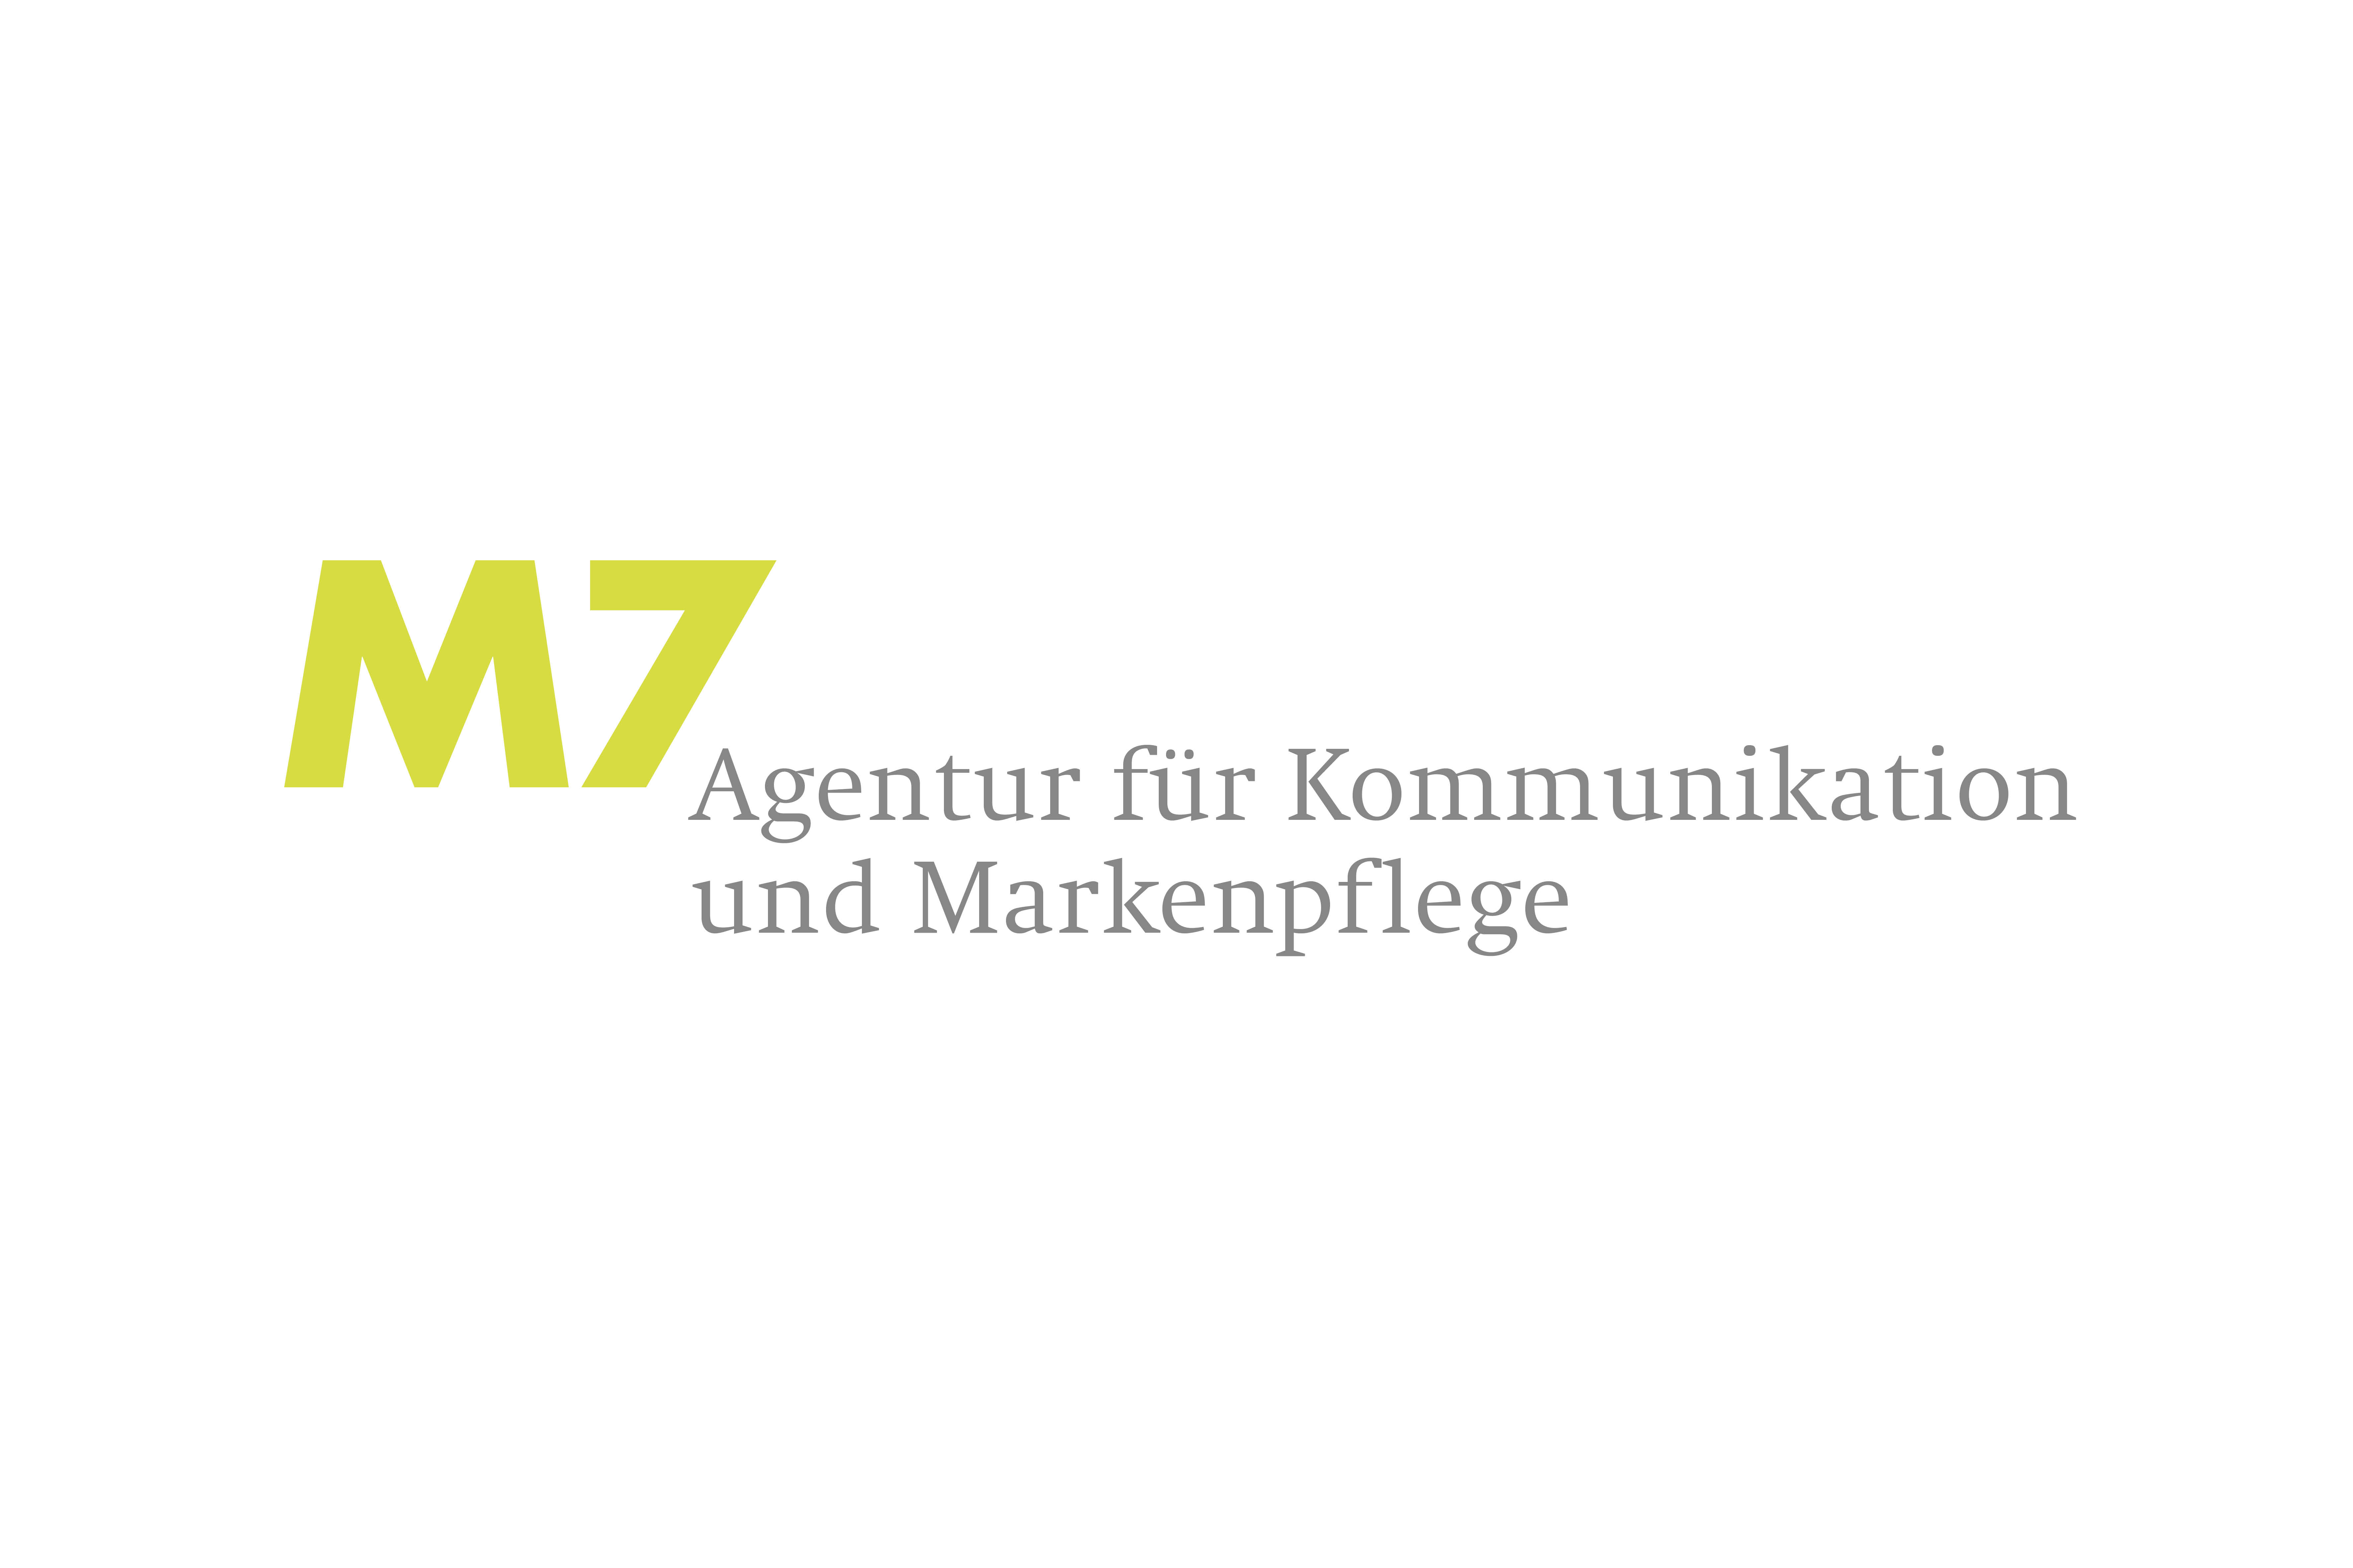 M7 Agentur für Kommunikation und Markenpflege